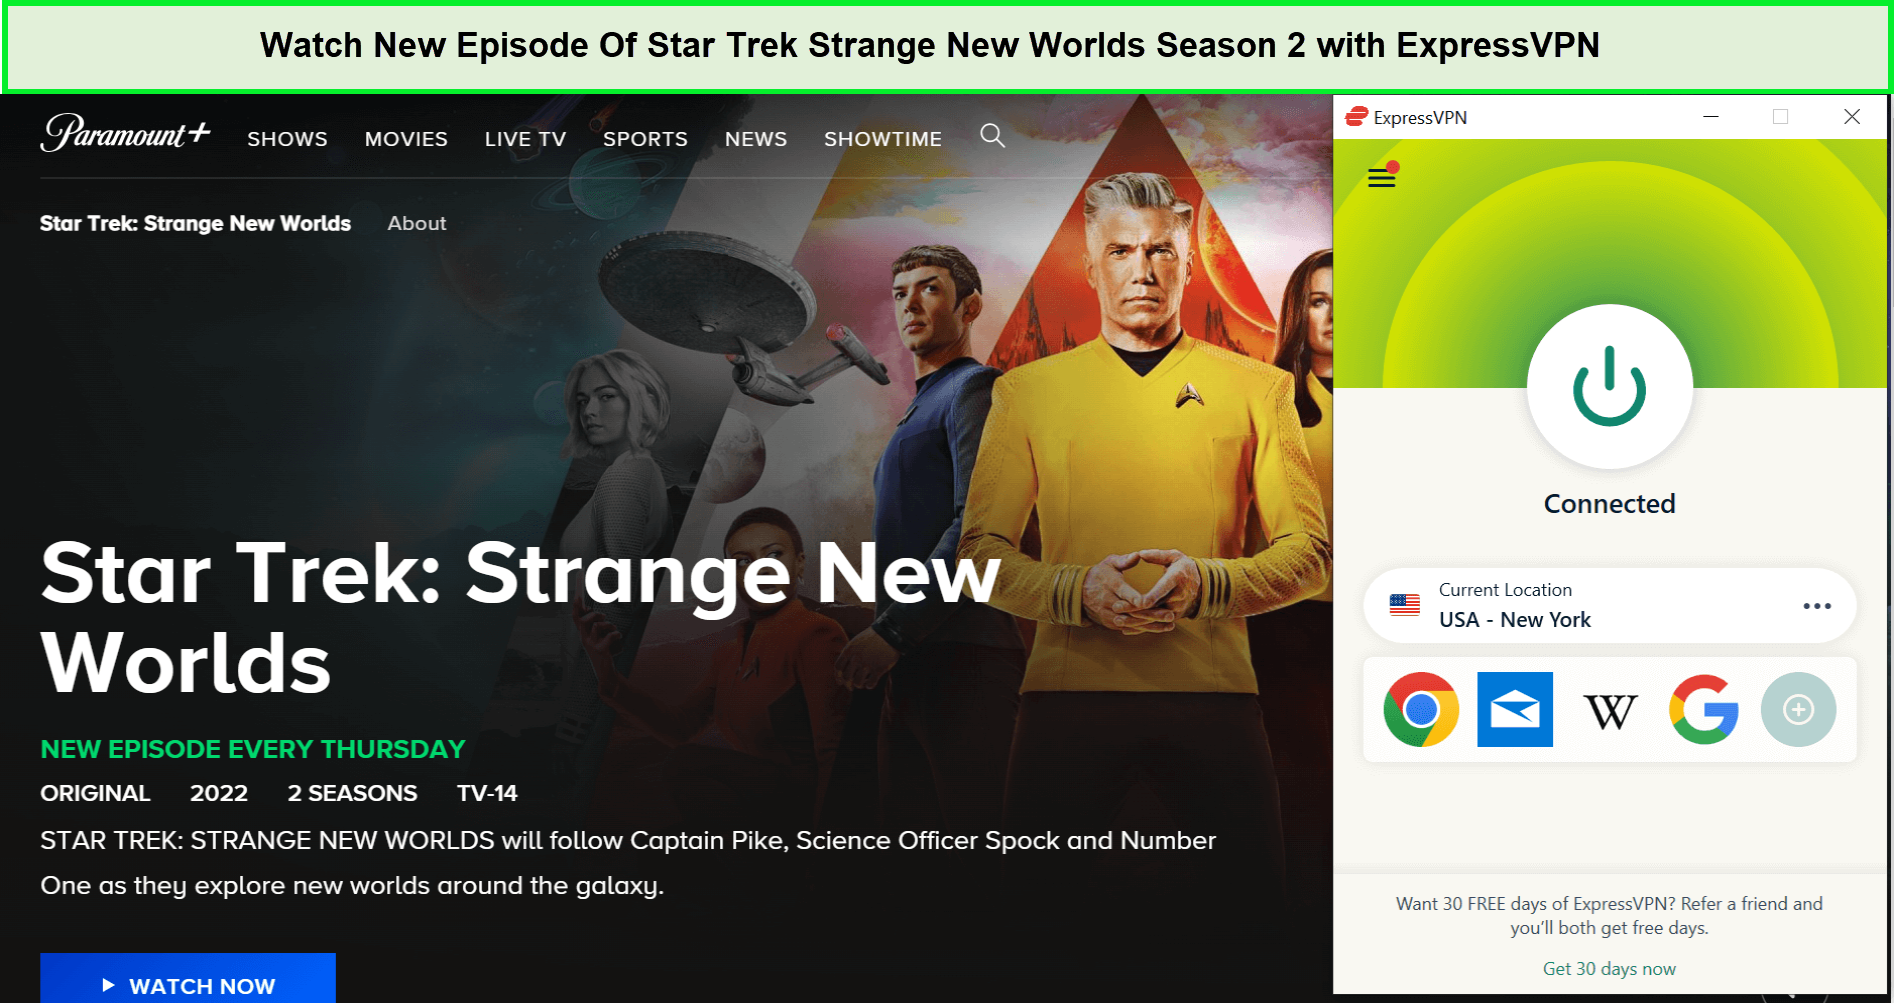 Watch-New-Episode-Of-Star-Trek-Strange-New-Worlds-Season-2-in-Australia-with-ExpressVPN